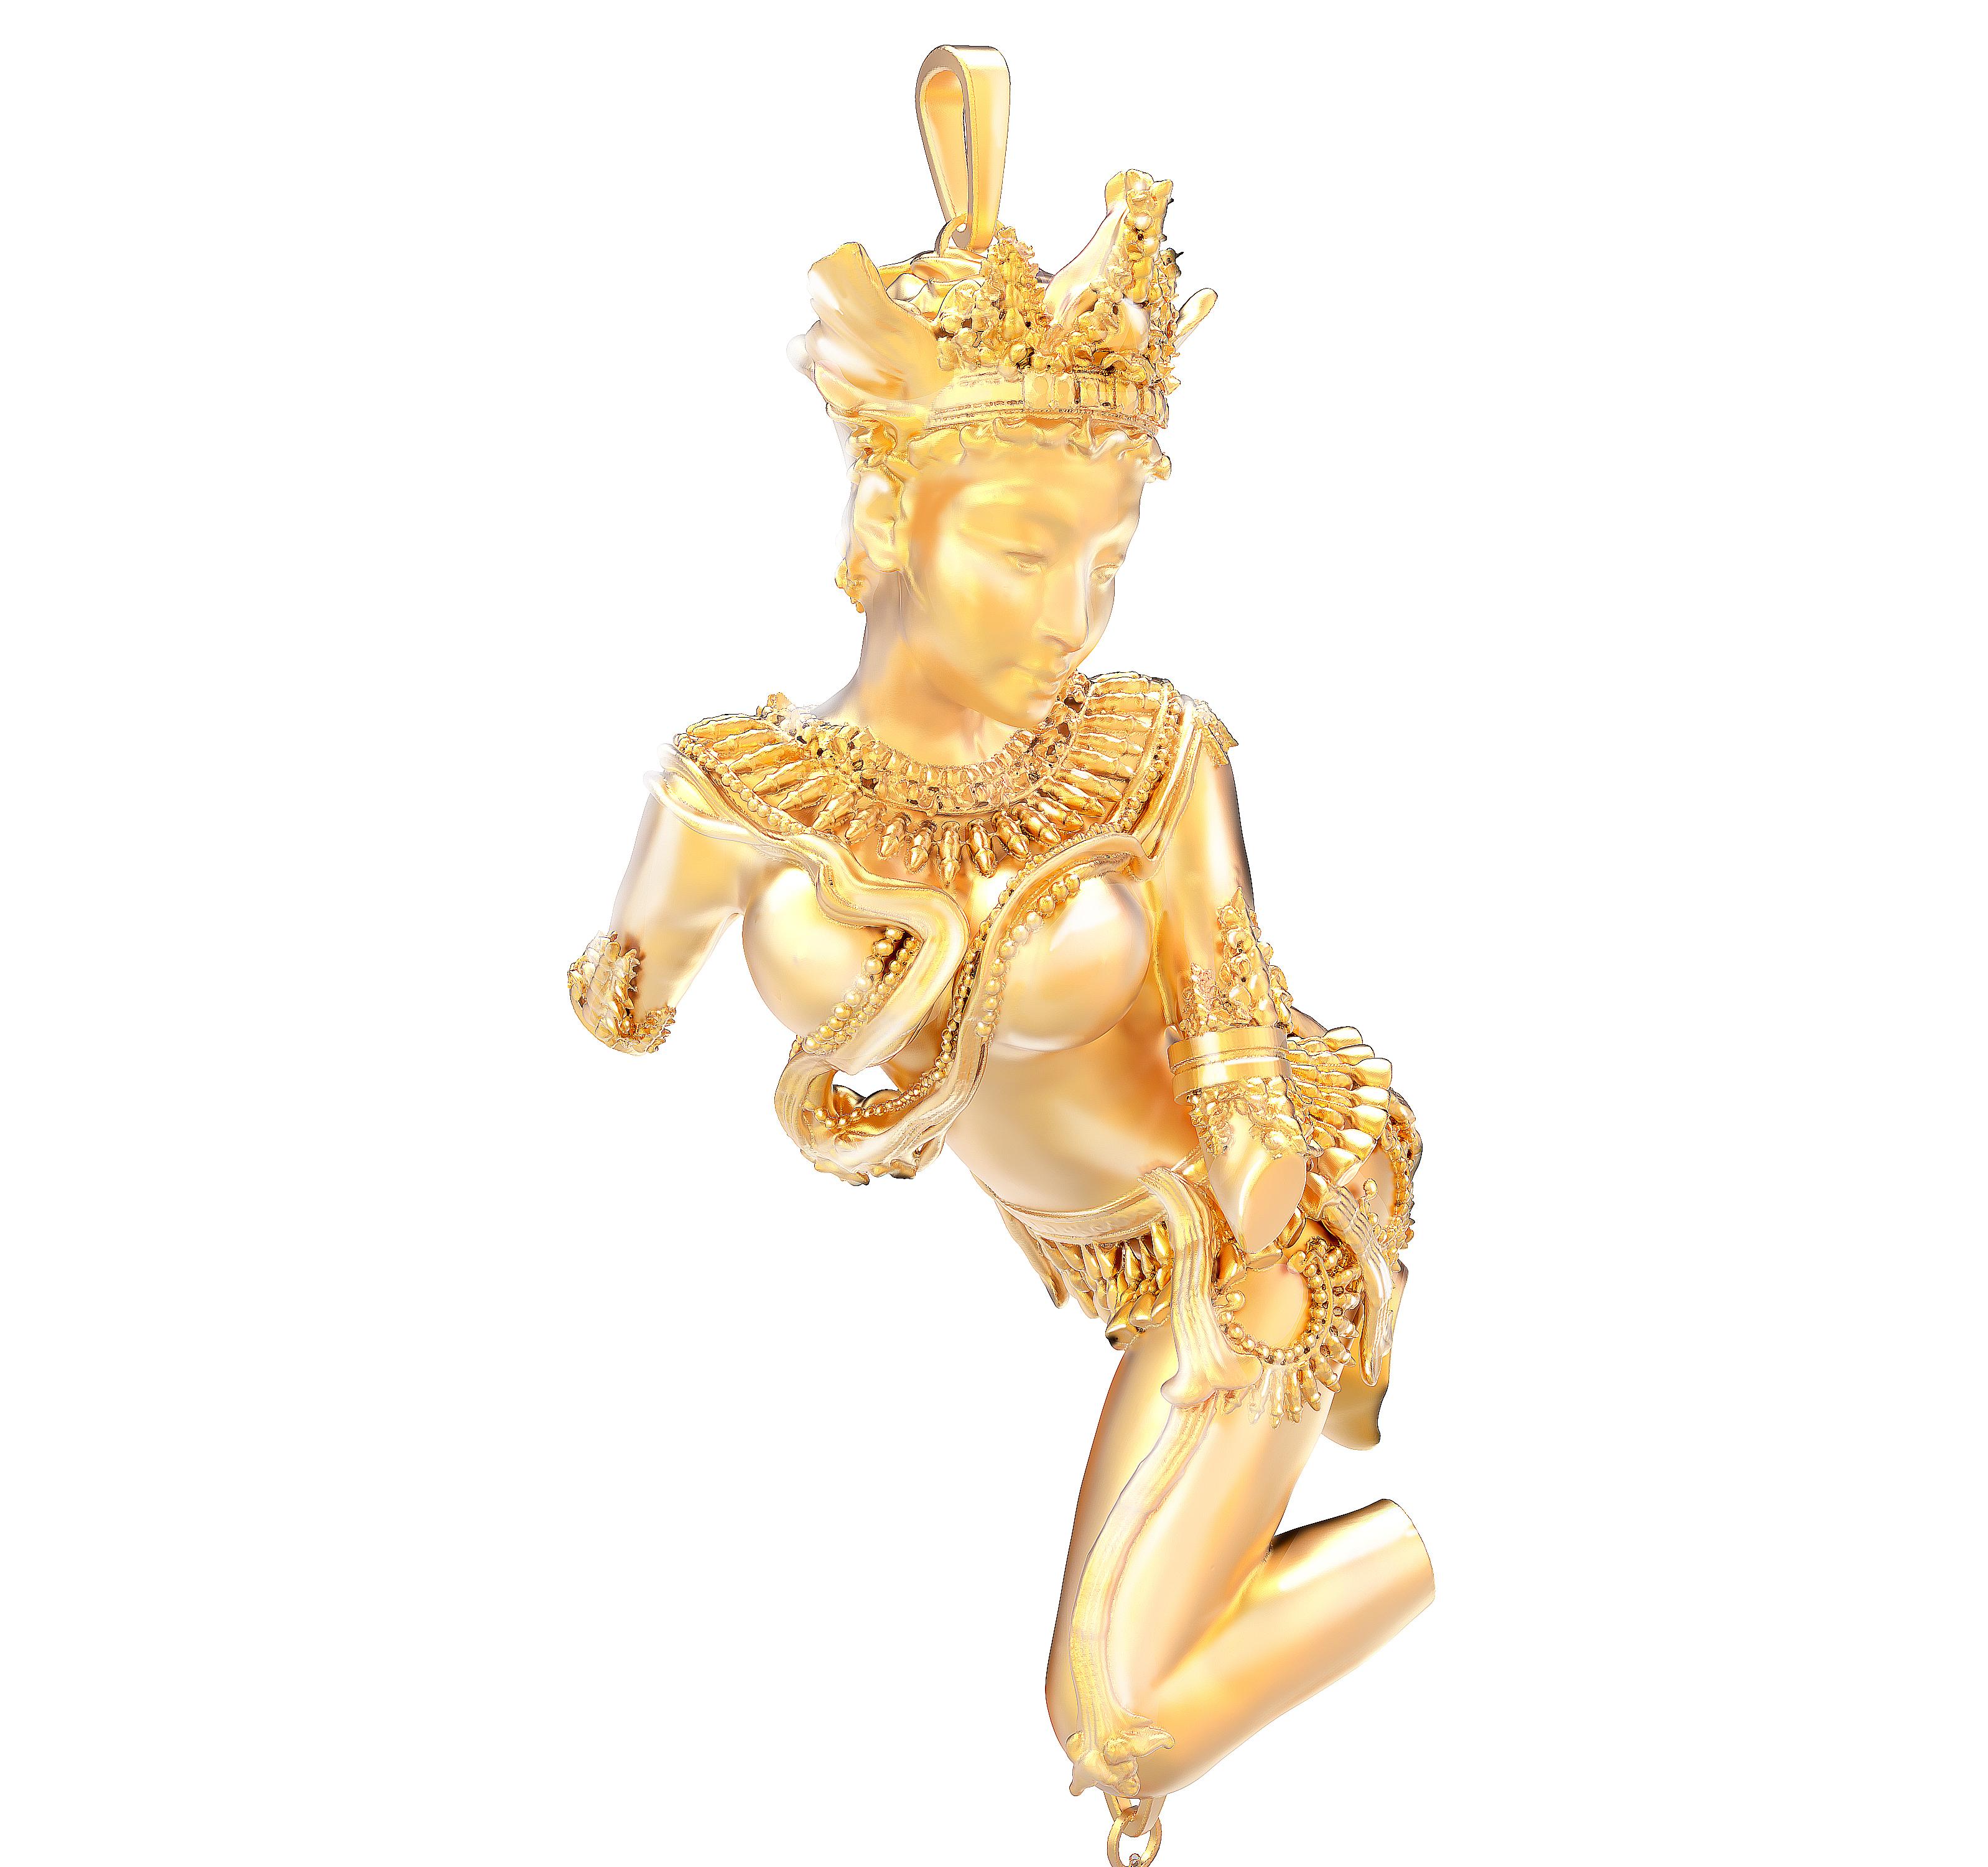 Diese Halskette mit Anhänger der himmlischen Tänzerin Devata besteht aus 18 Karat Gelbgold mit einem oval geschliffenen Neonkupfer, das einen Paraiba-Turmalin mit Wasserbecken trägt (2,4 Karat, visuell größer). Das Gewicht des Goldes beträgt etwa 30